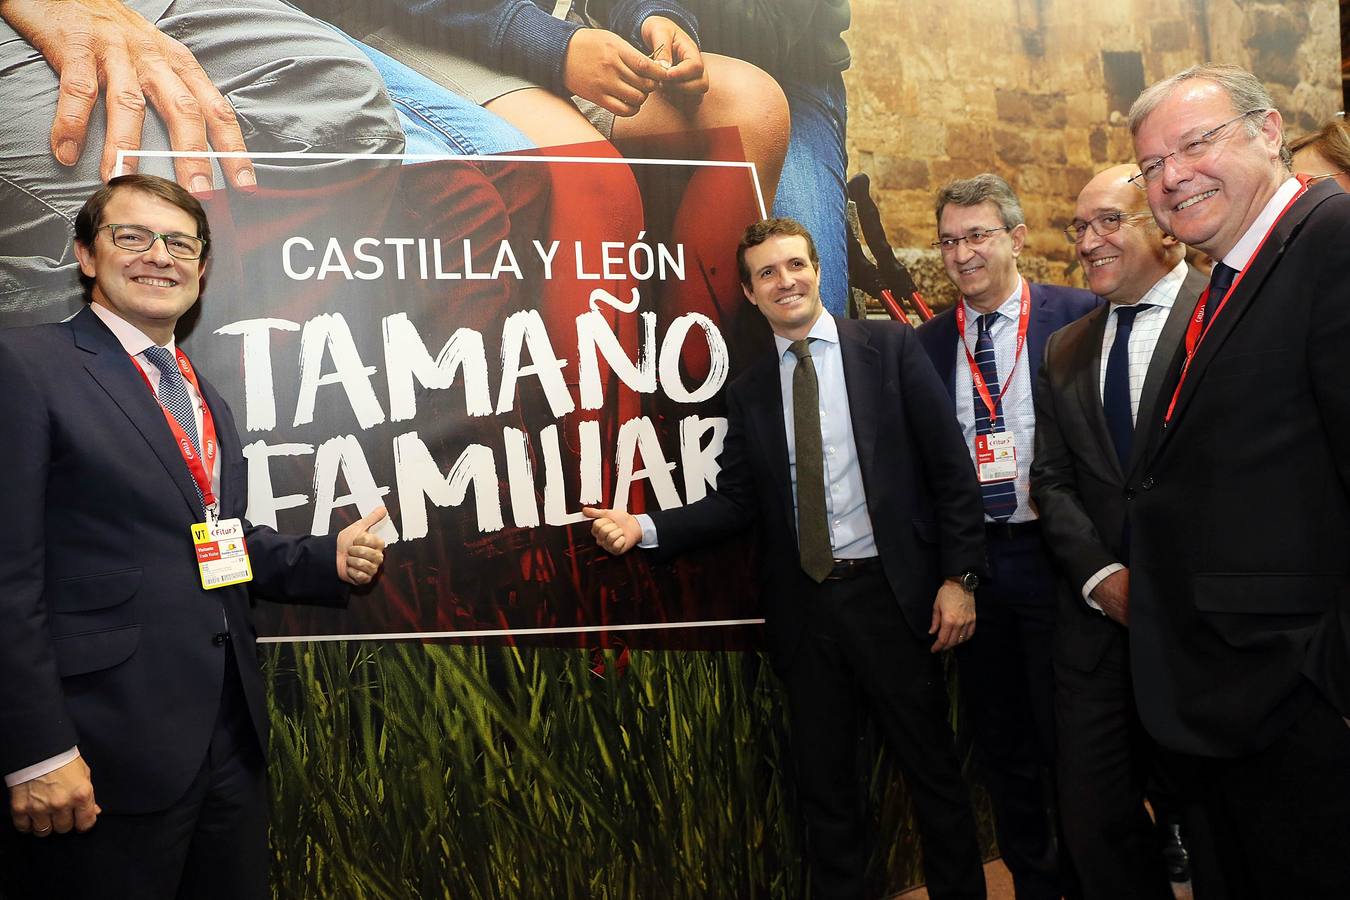 El presidente del PPCyL, Alfonso Fernández Mañueco, junto al presidente nacional del Partido Popular, Pablo Casado, en la visita al stand de Castilla y León.